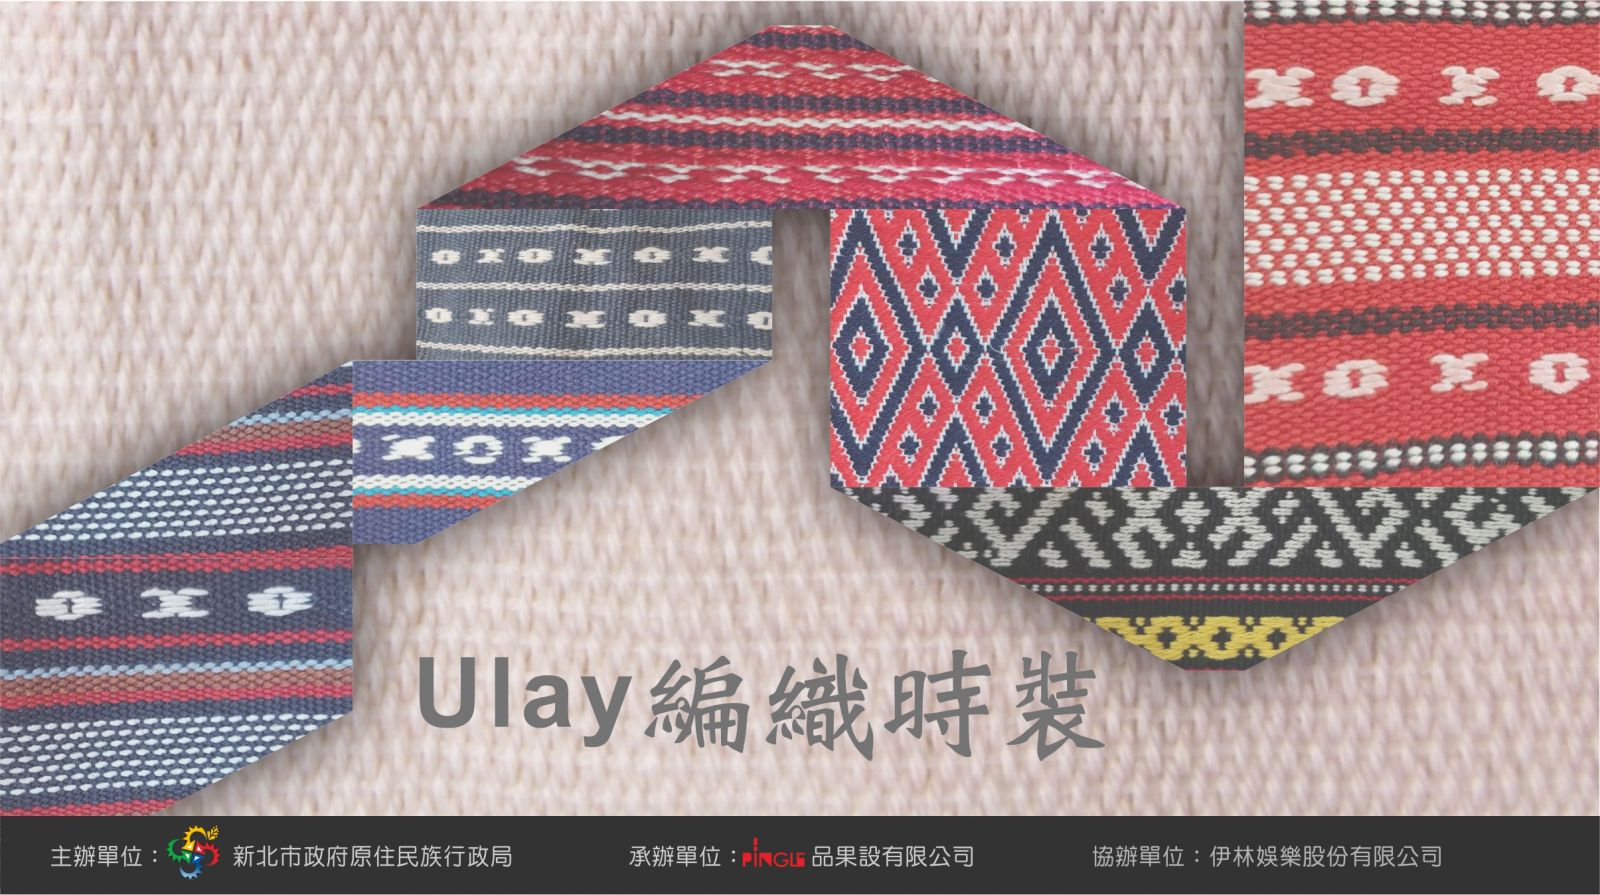 「Ulay 編織時裝」主視覺